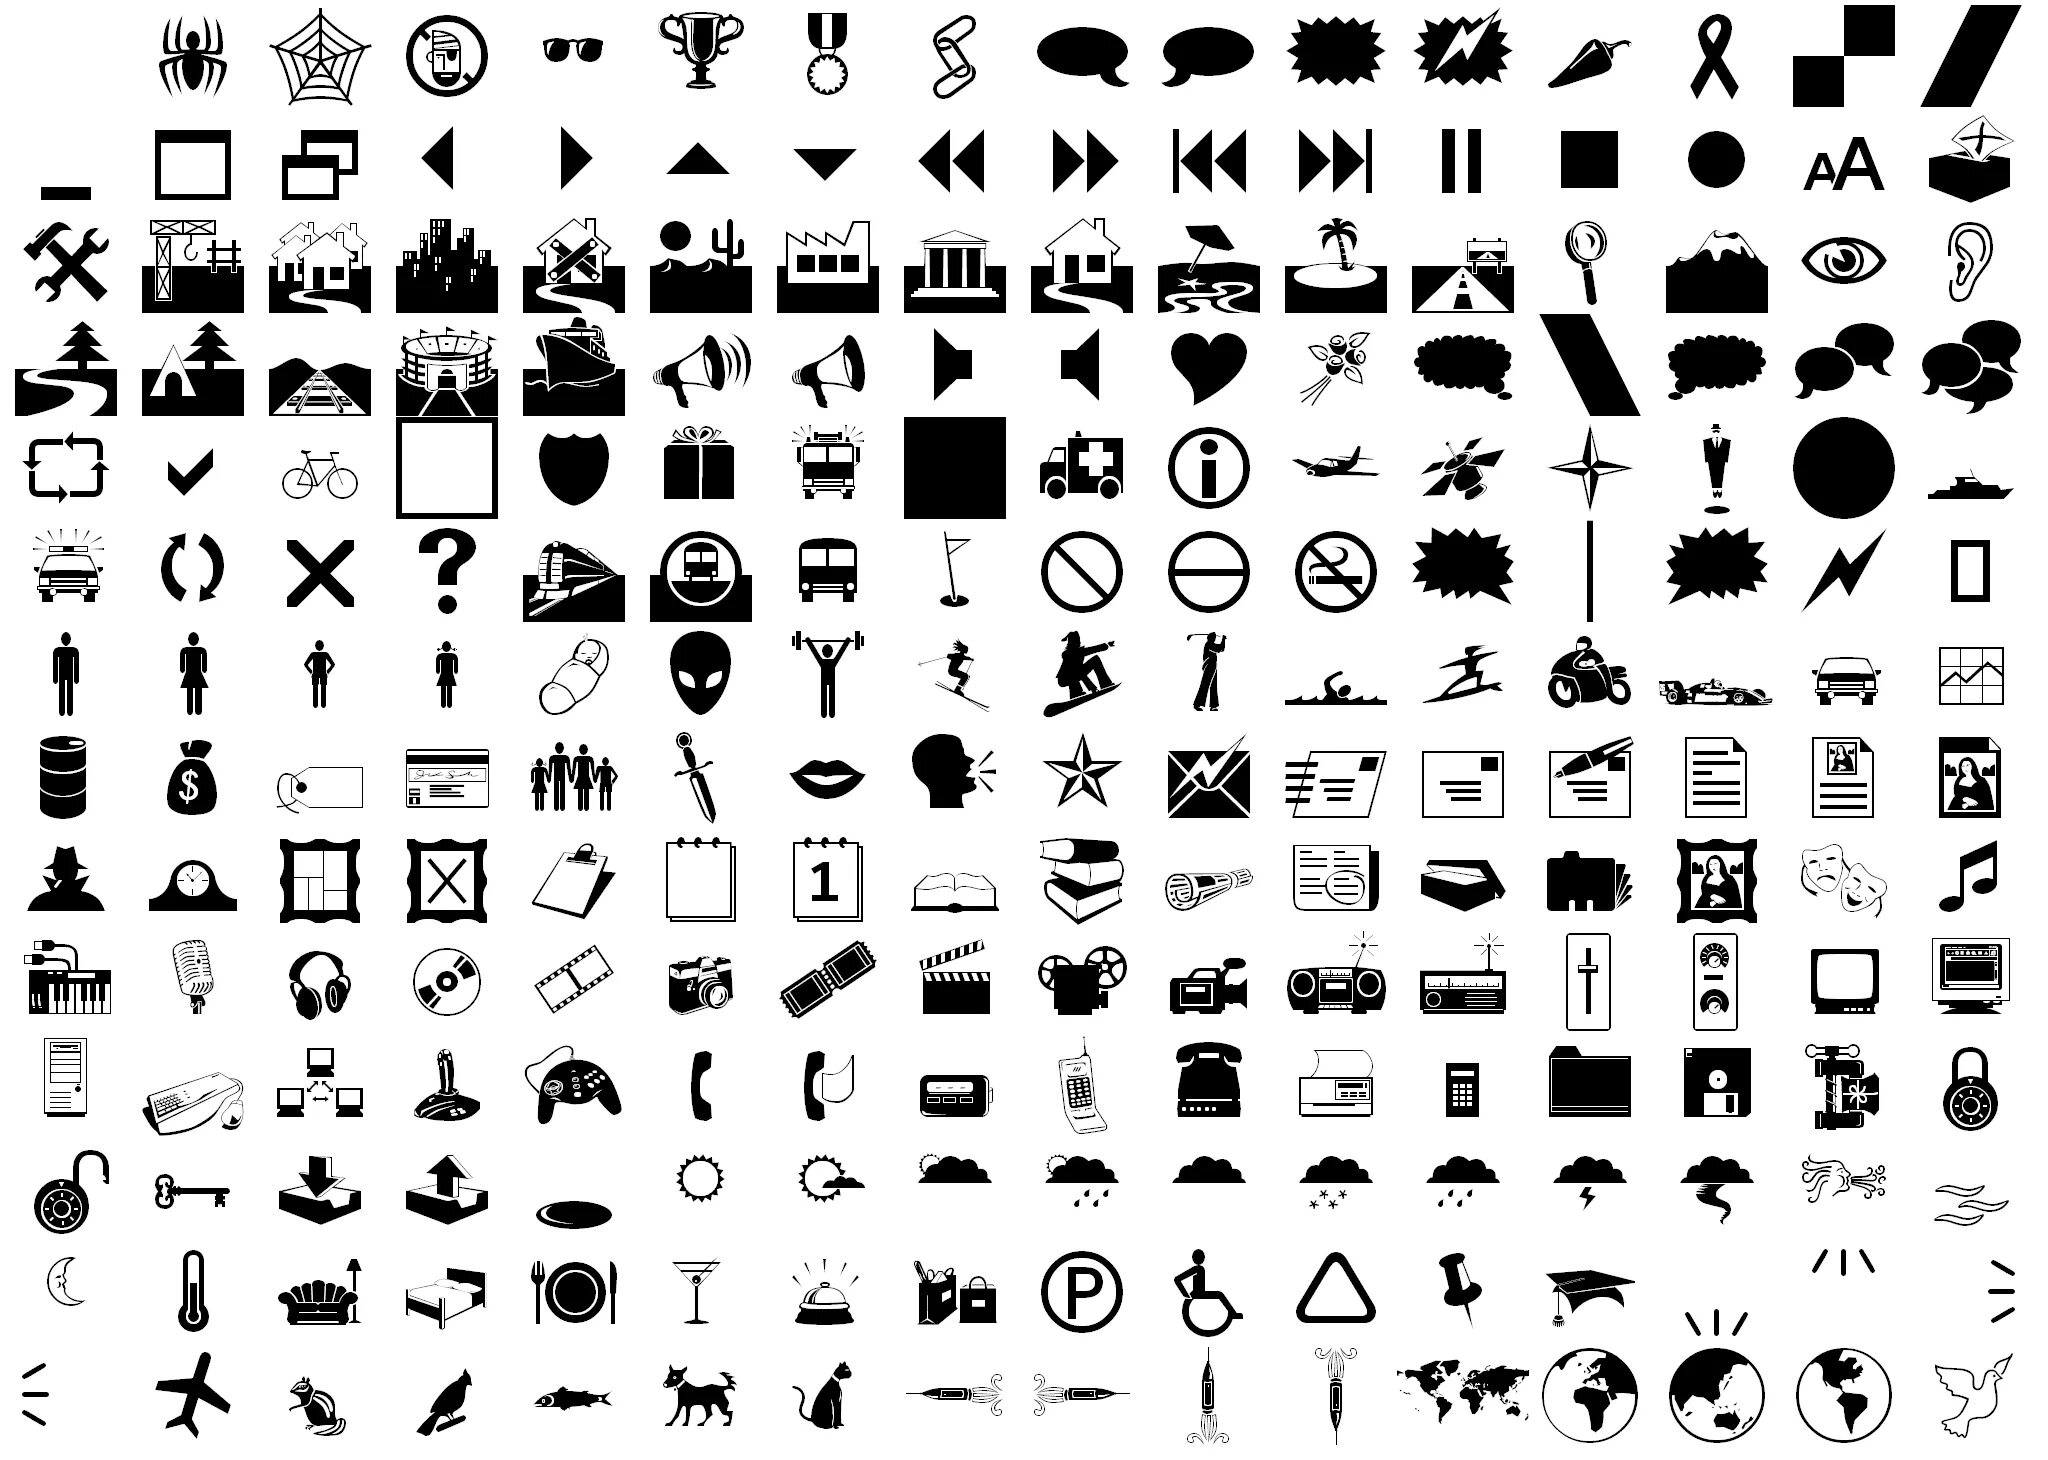 Символы для оформления ников. Символы. Различные значки. Символьные шрифты. Символьные значки.